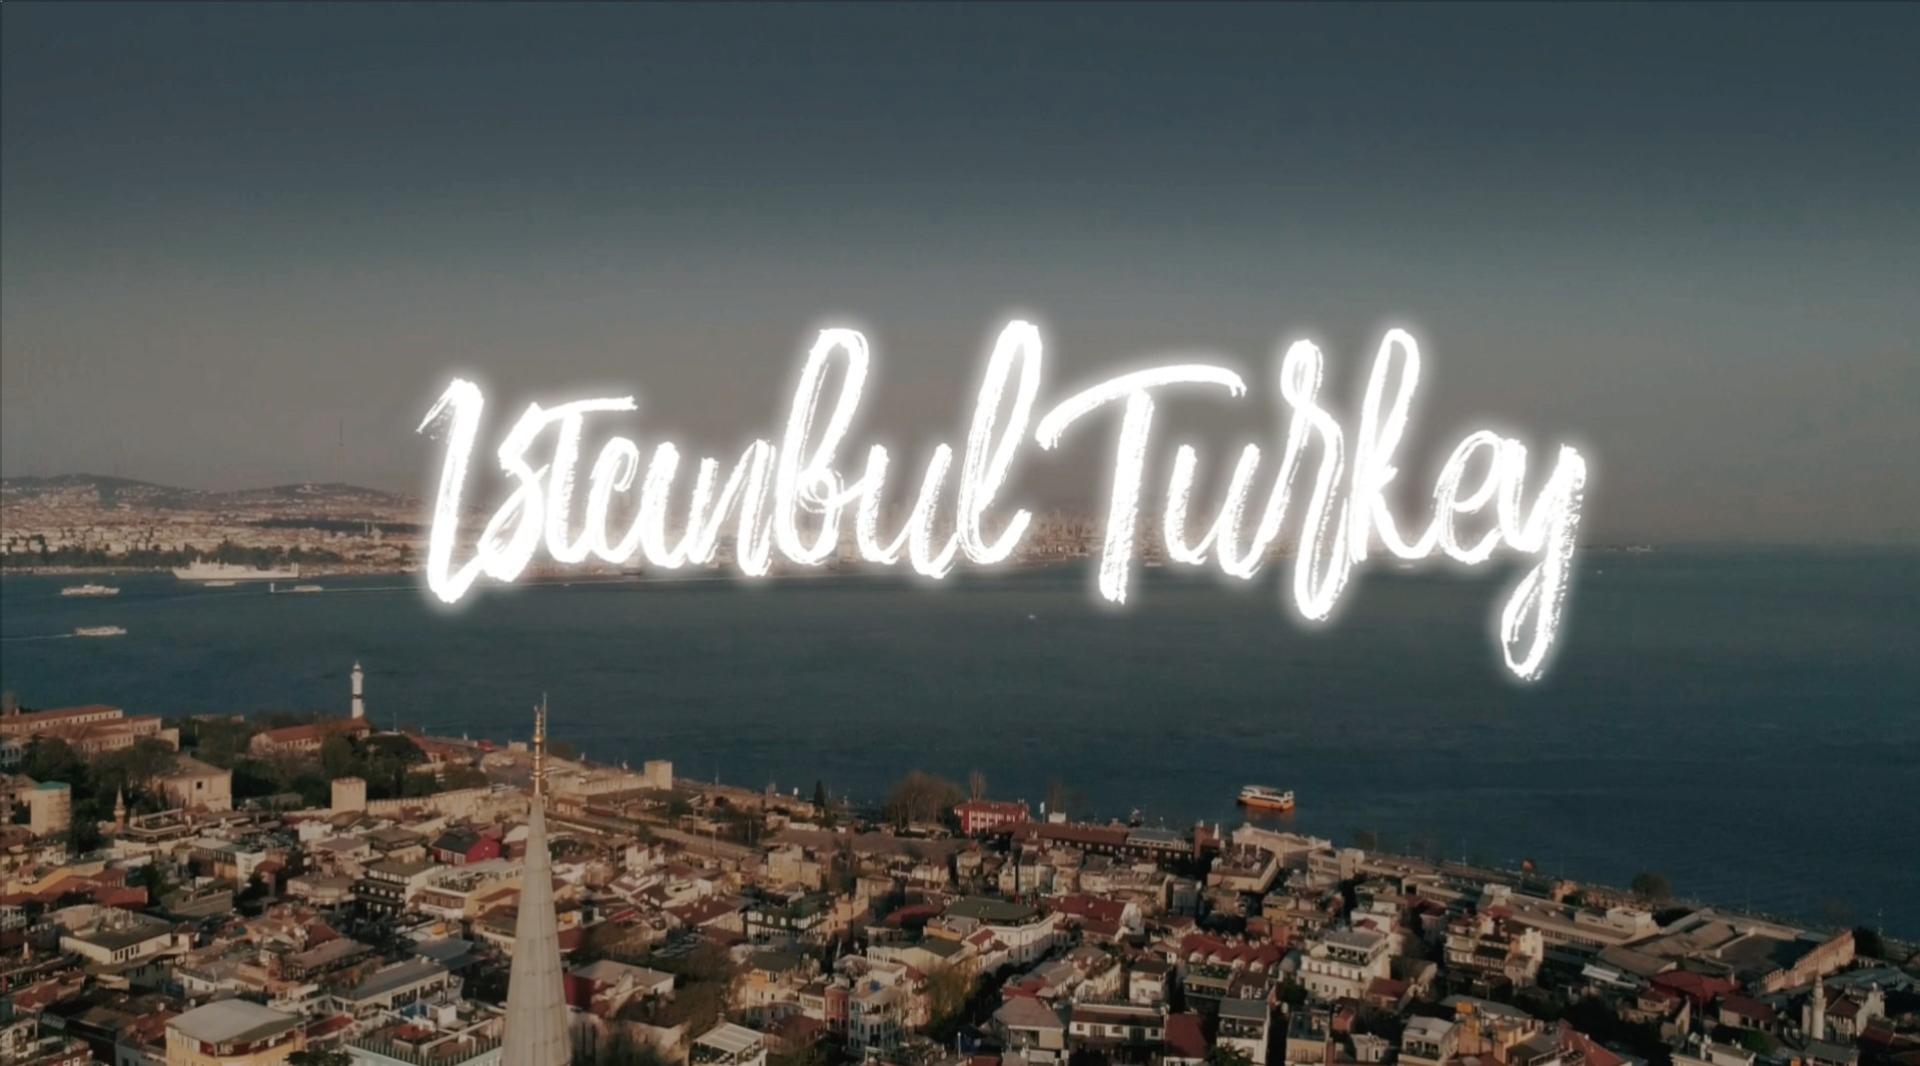 土耳其|伊斯坦布尔 人文混剪